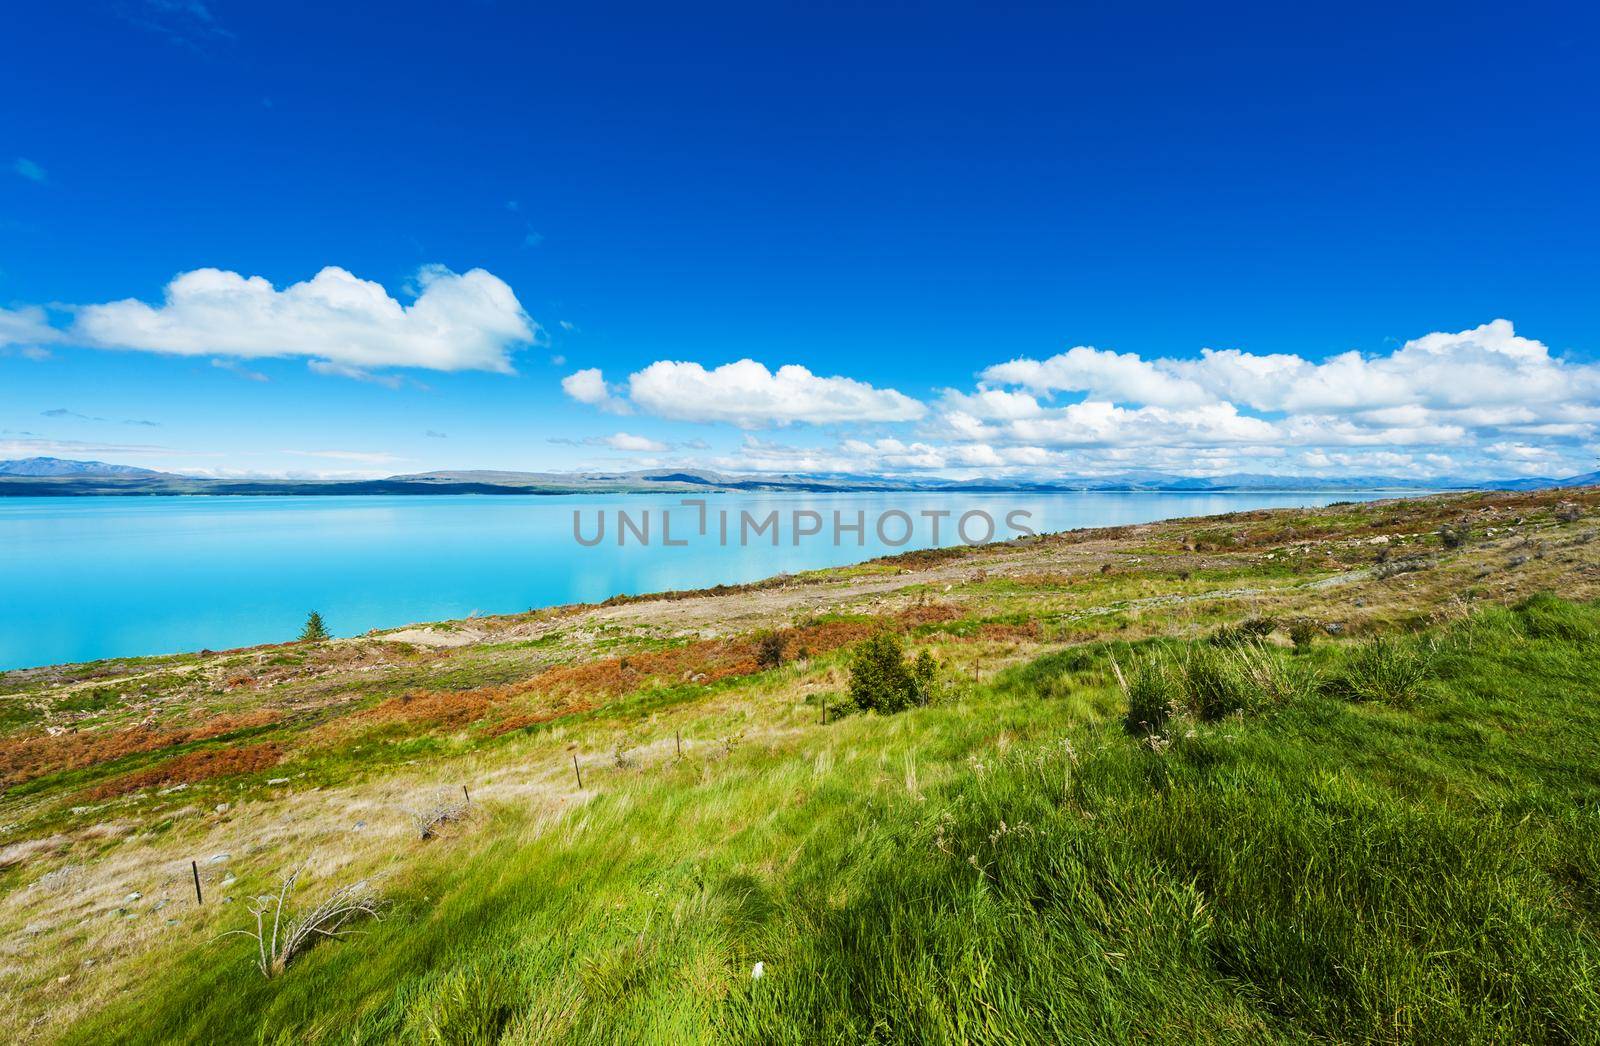 Beautiful incredibly blue lake Pukaki at New Zealand